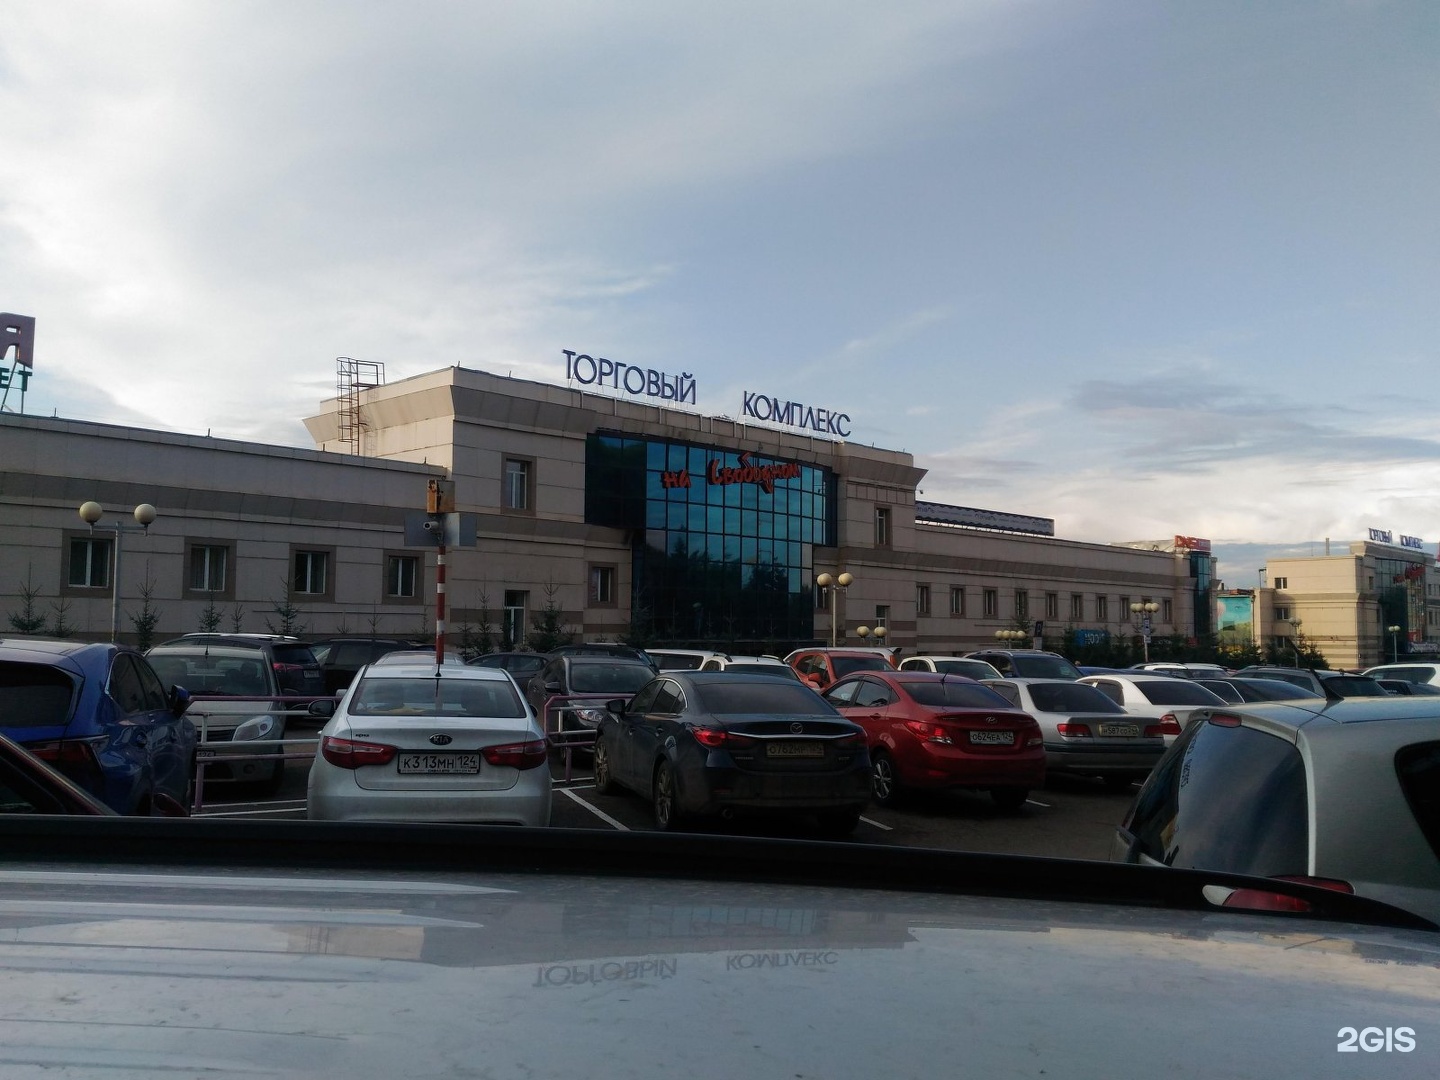 Кинотеатр торговый квартал на свободном красноярск